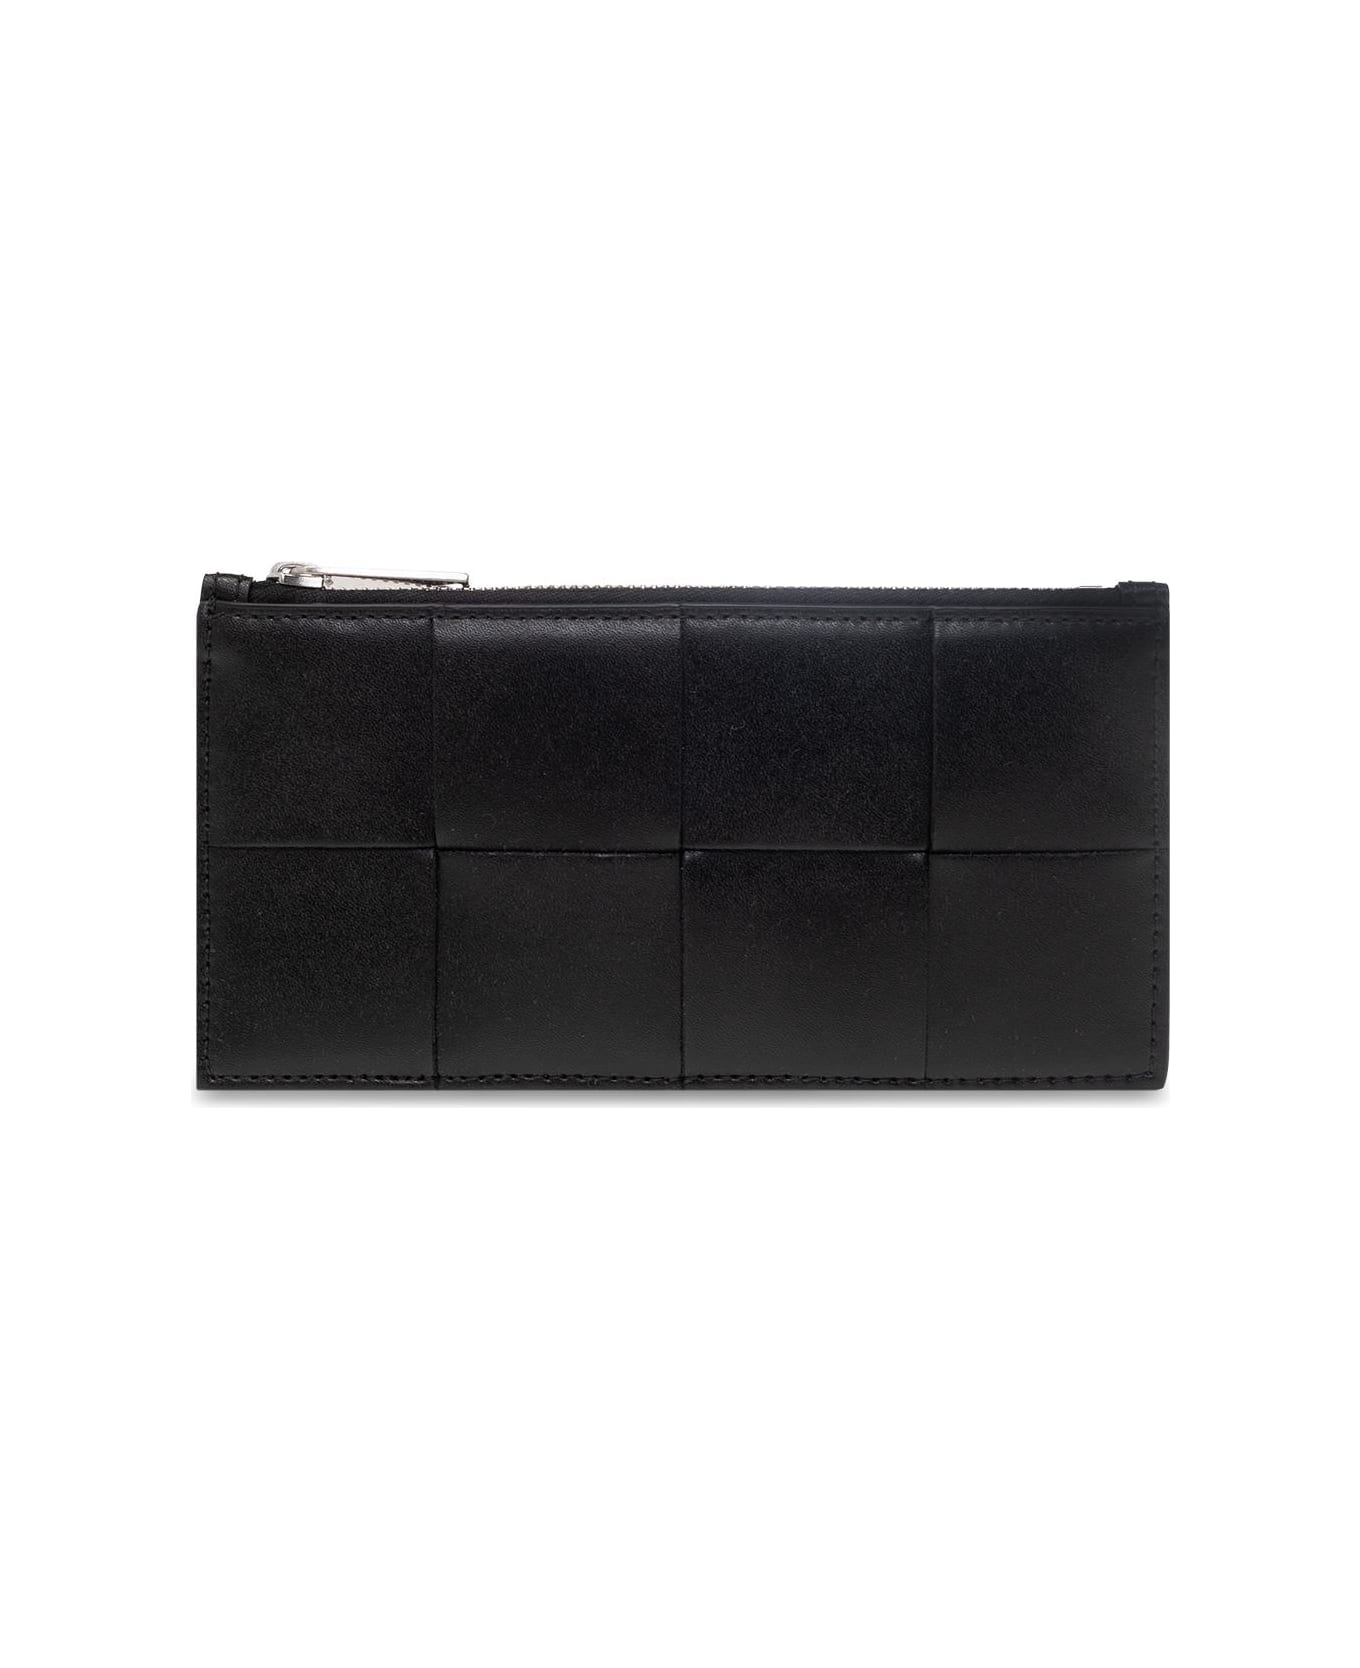 Bottega Veneta Leather Card Case - MULTICOLOR デジタルアクセサリー